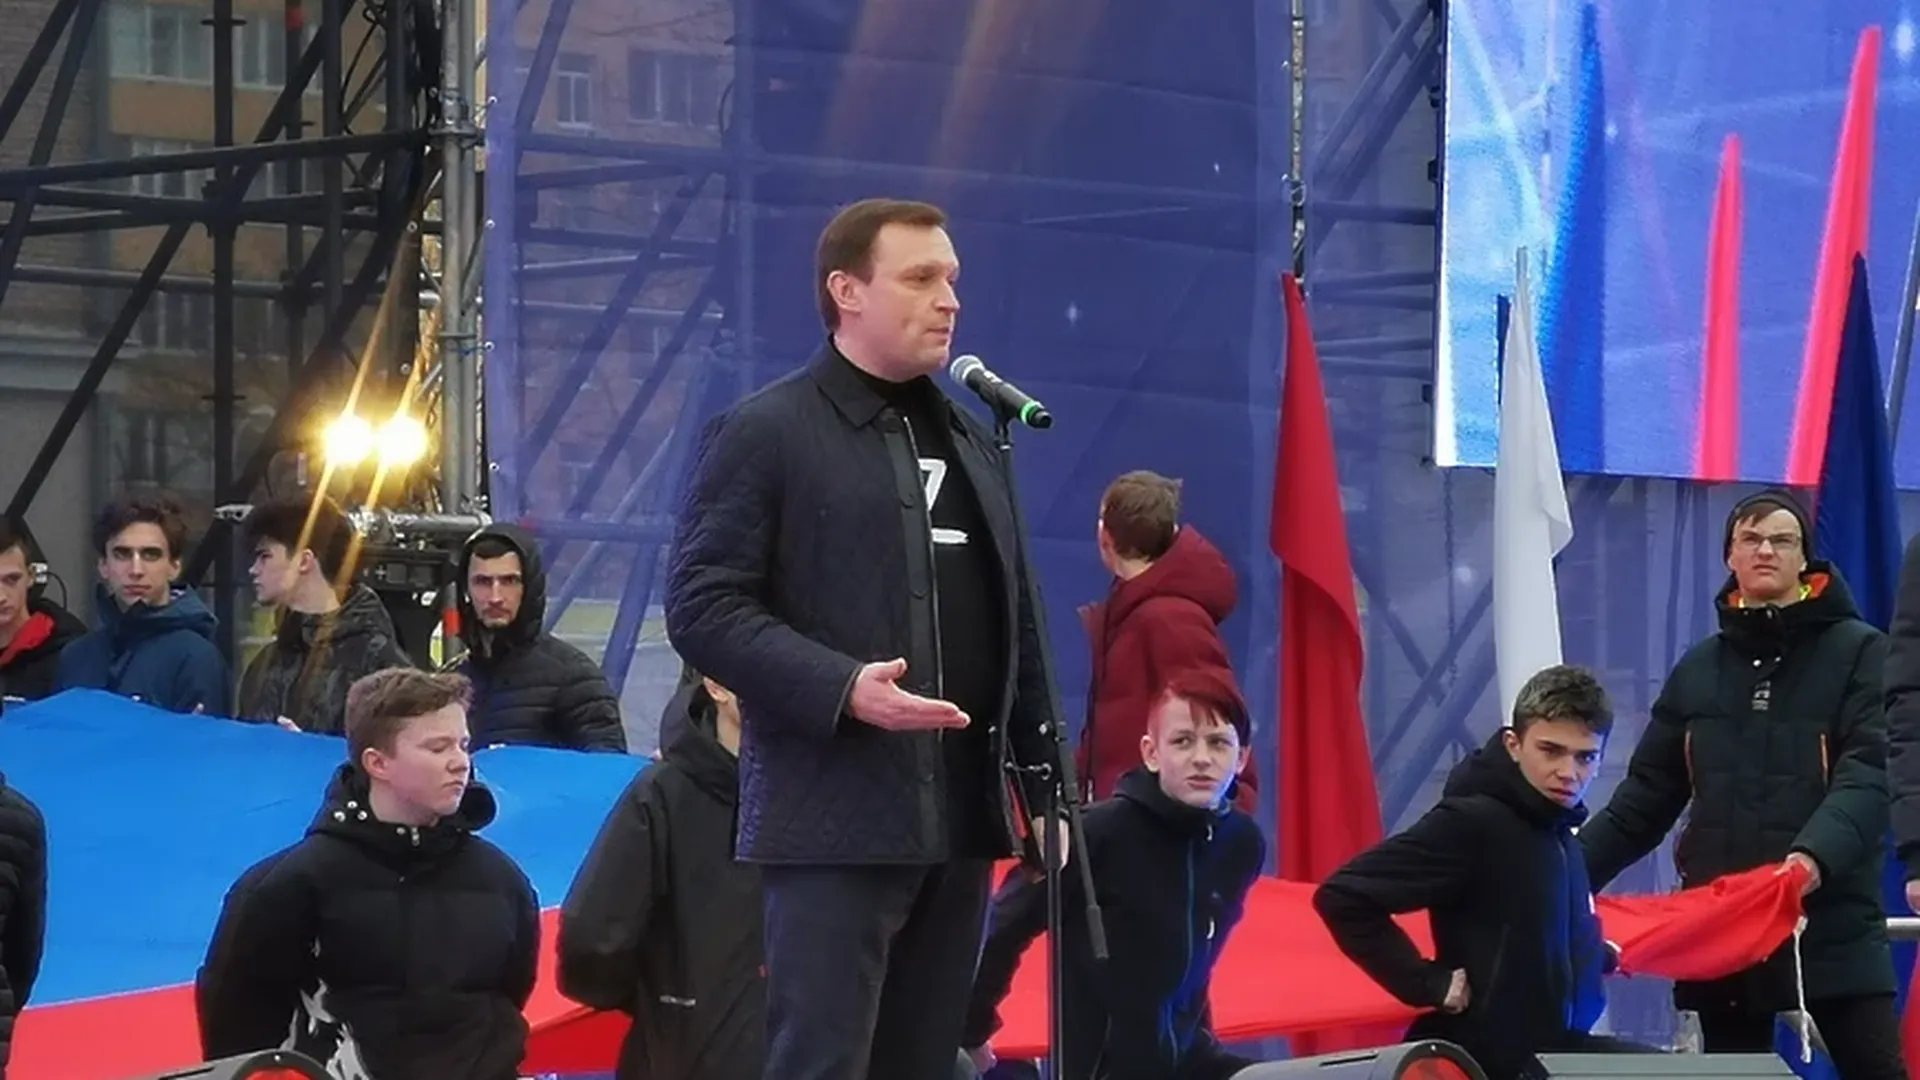 Депутат Госдумы Пахомов пожелал жителям Королева быть первыми во всем